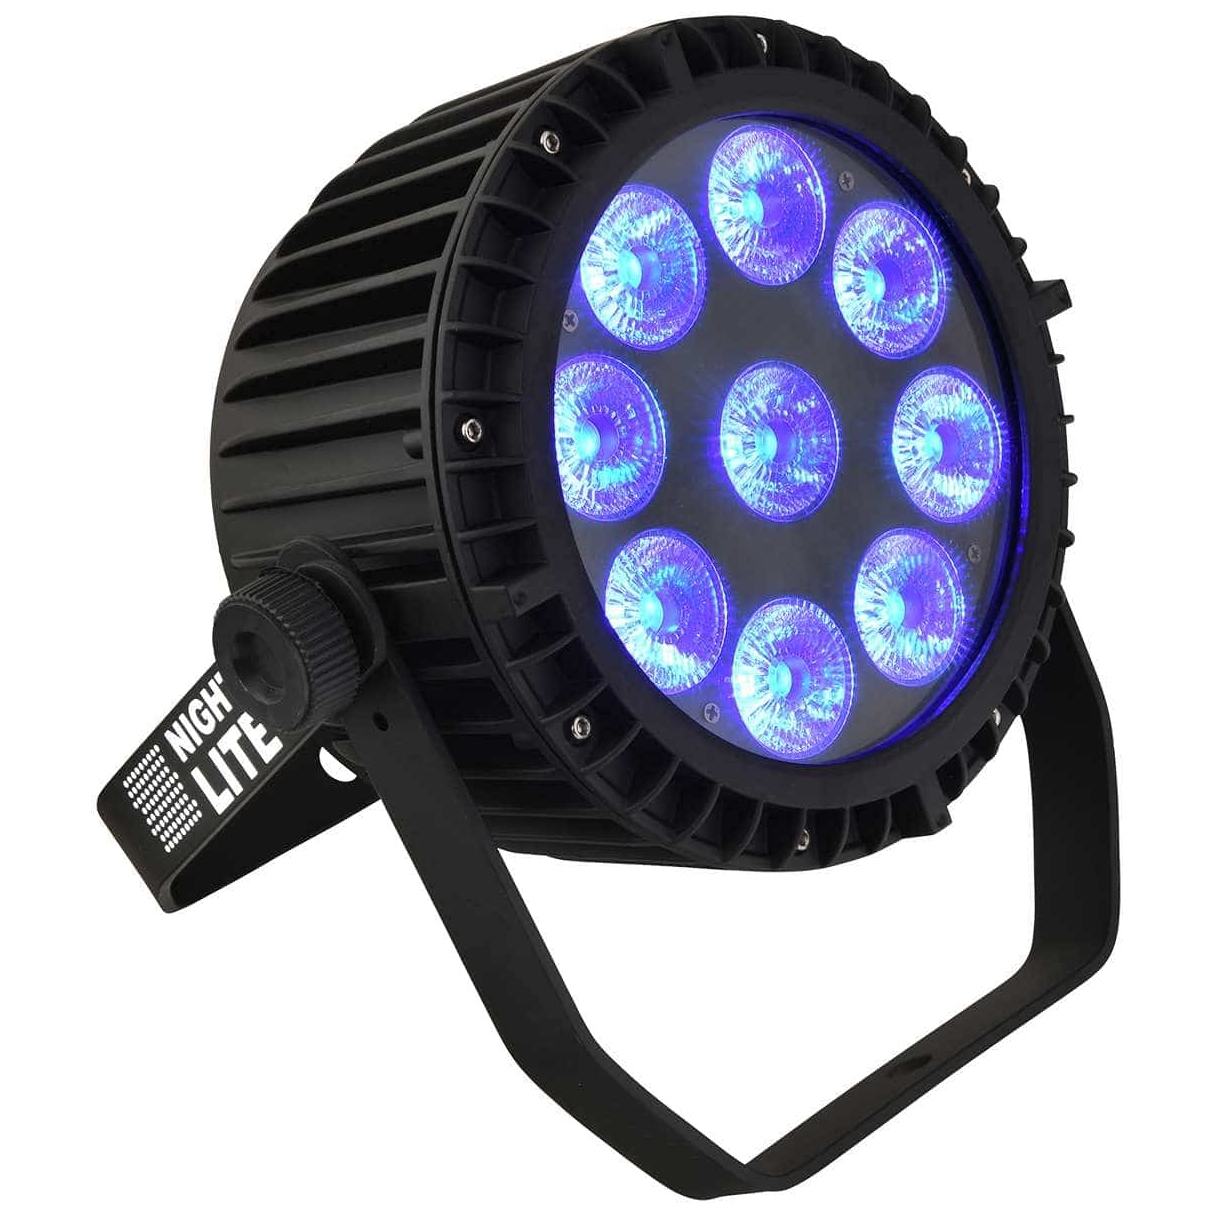 Nightlite LED Par Pro 9x15W RGBWA+UV, IP65, wasserdicht